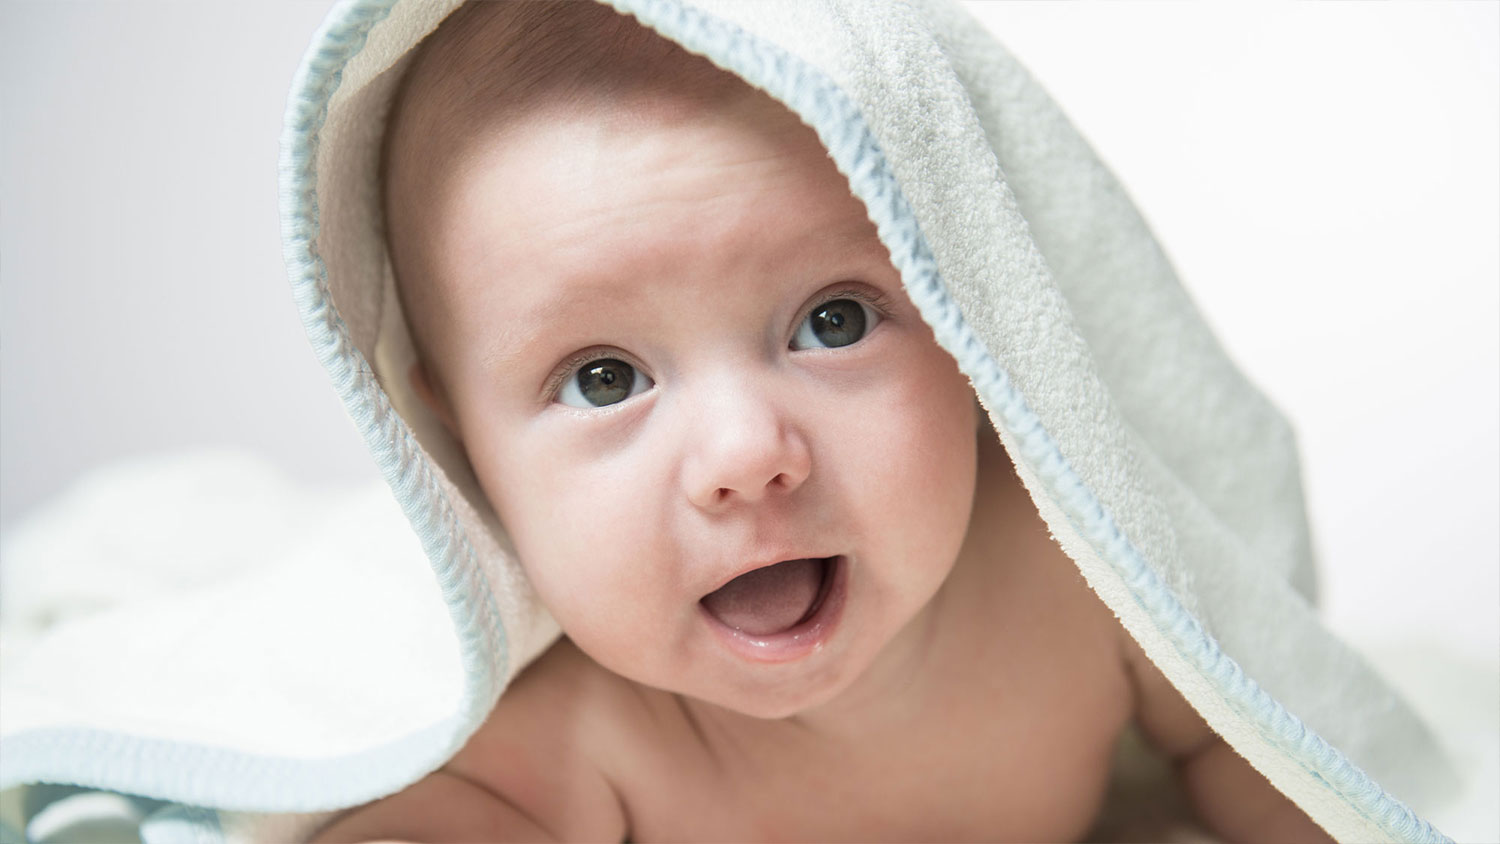 Hai Ibu, Bangun Ya Aku Lapar! –  Alasan Bayi Sangat Suka Menyusu